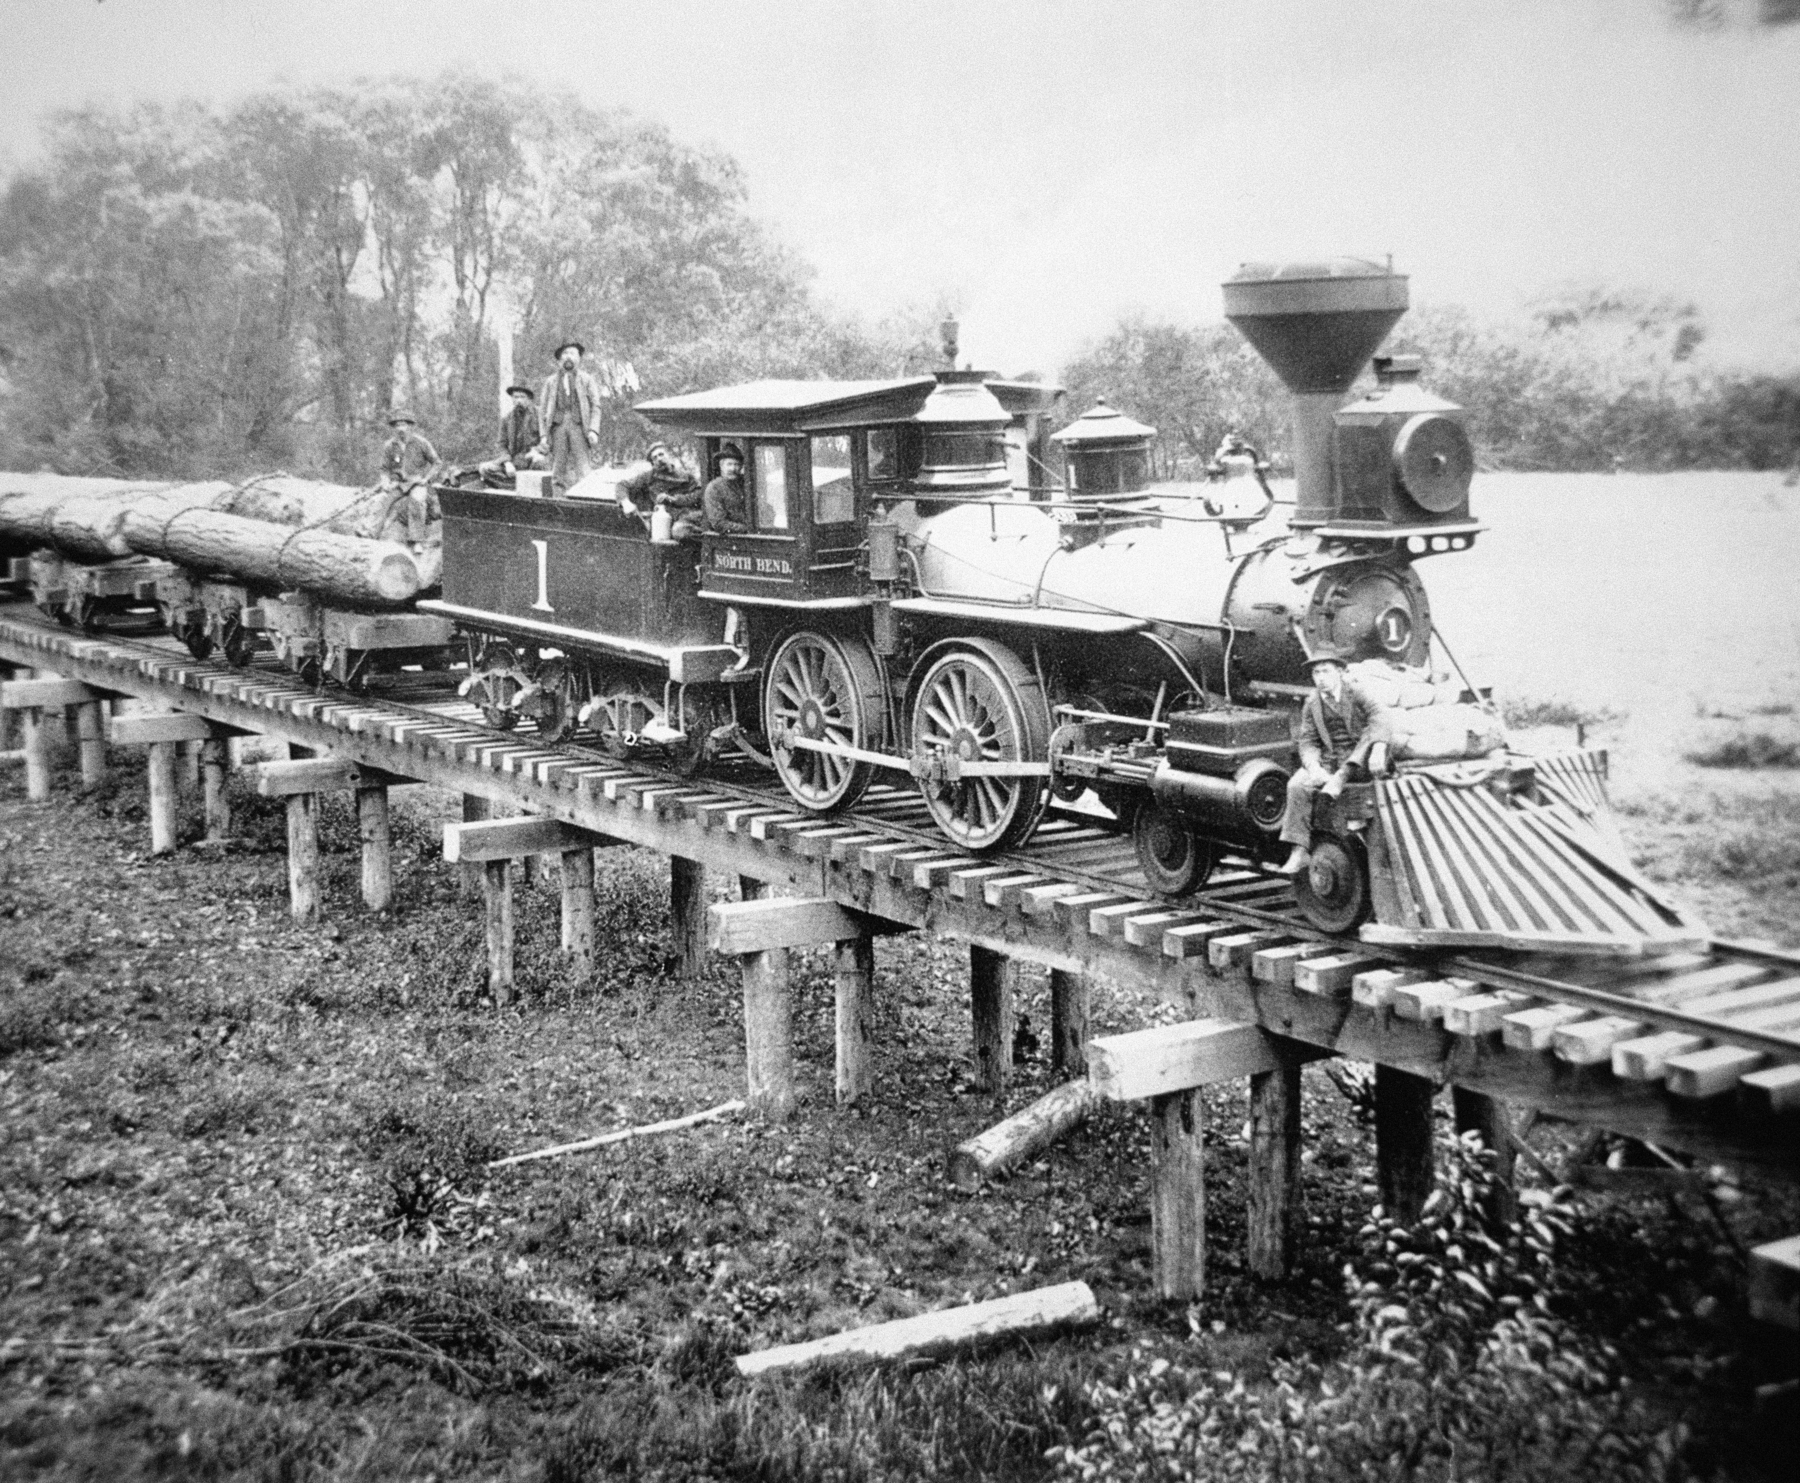 Fotografia em preto e branco. Trem carregando troncos de árvore passando por ferrovia suspensa em uma ponte de madeira. Na locomotiva, rodas grandes e uma chaminé.